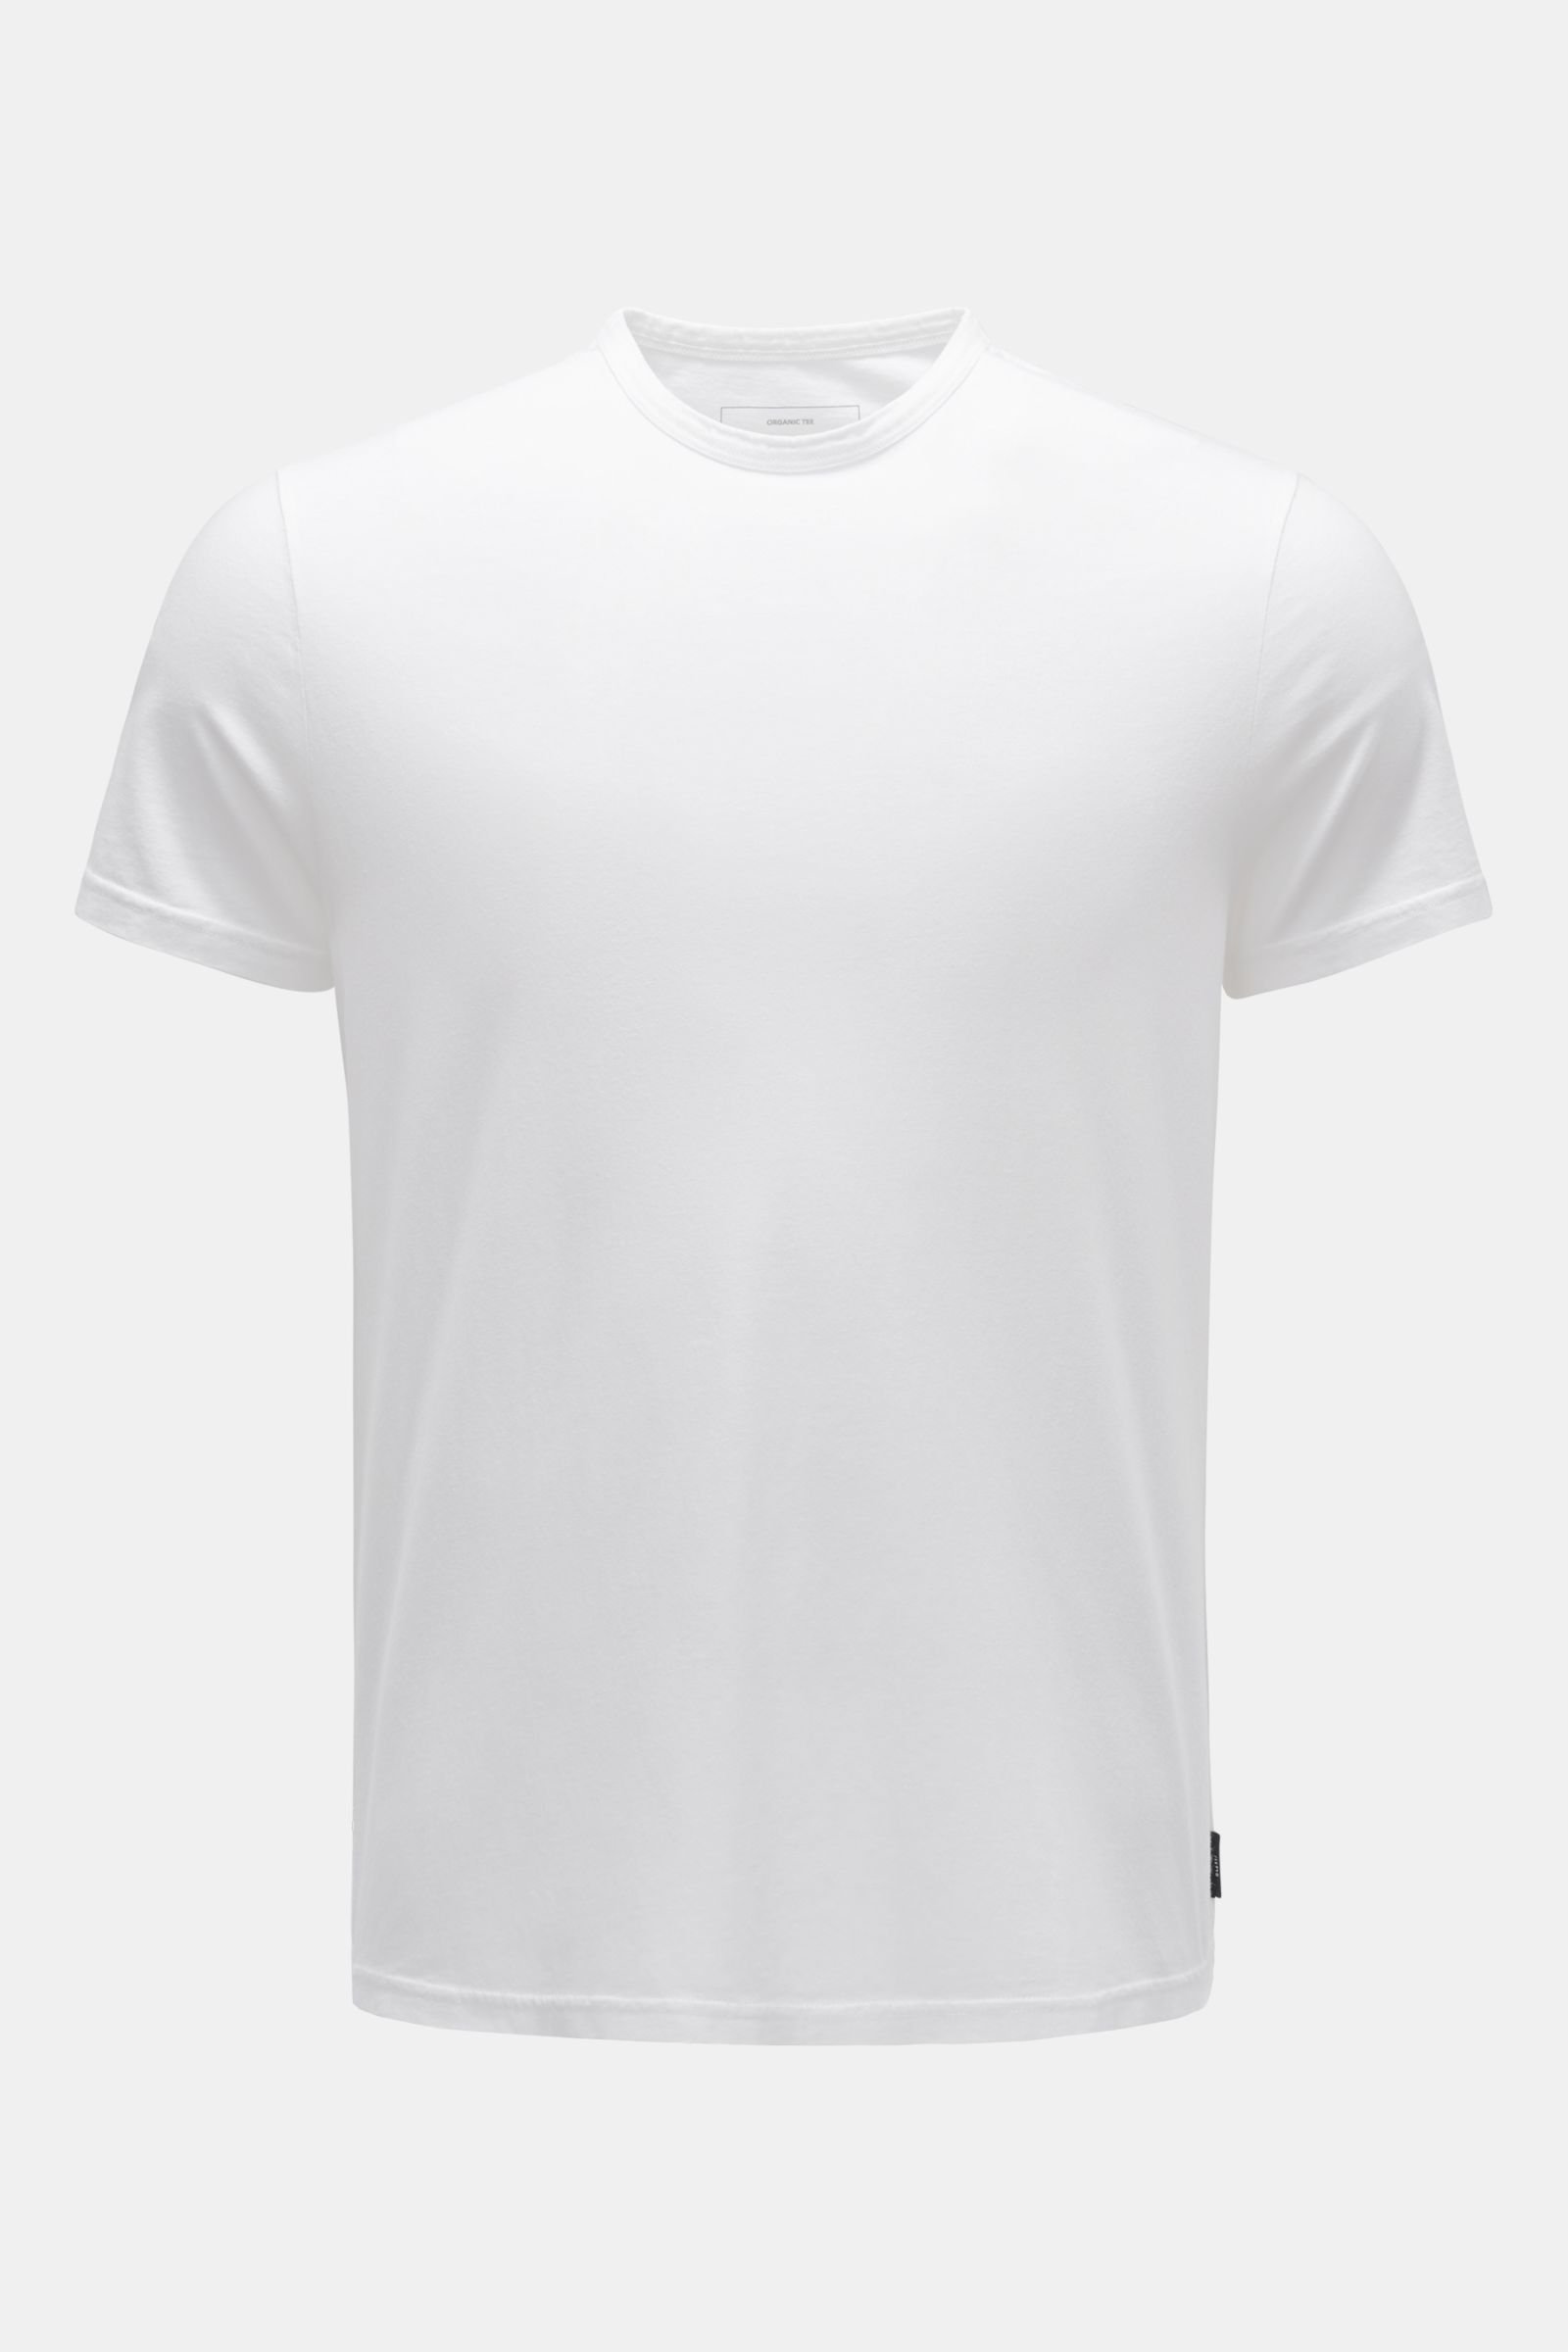 'Organic Tee' crew neck T-shirt white